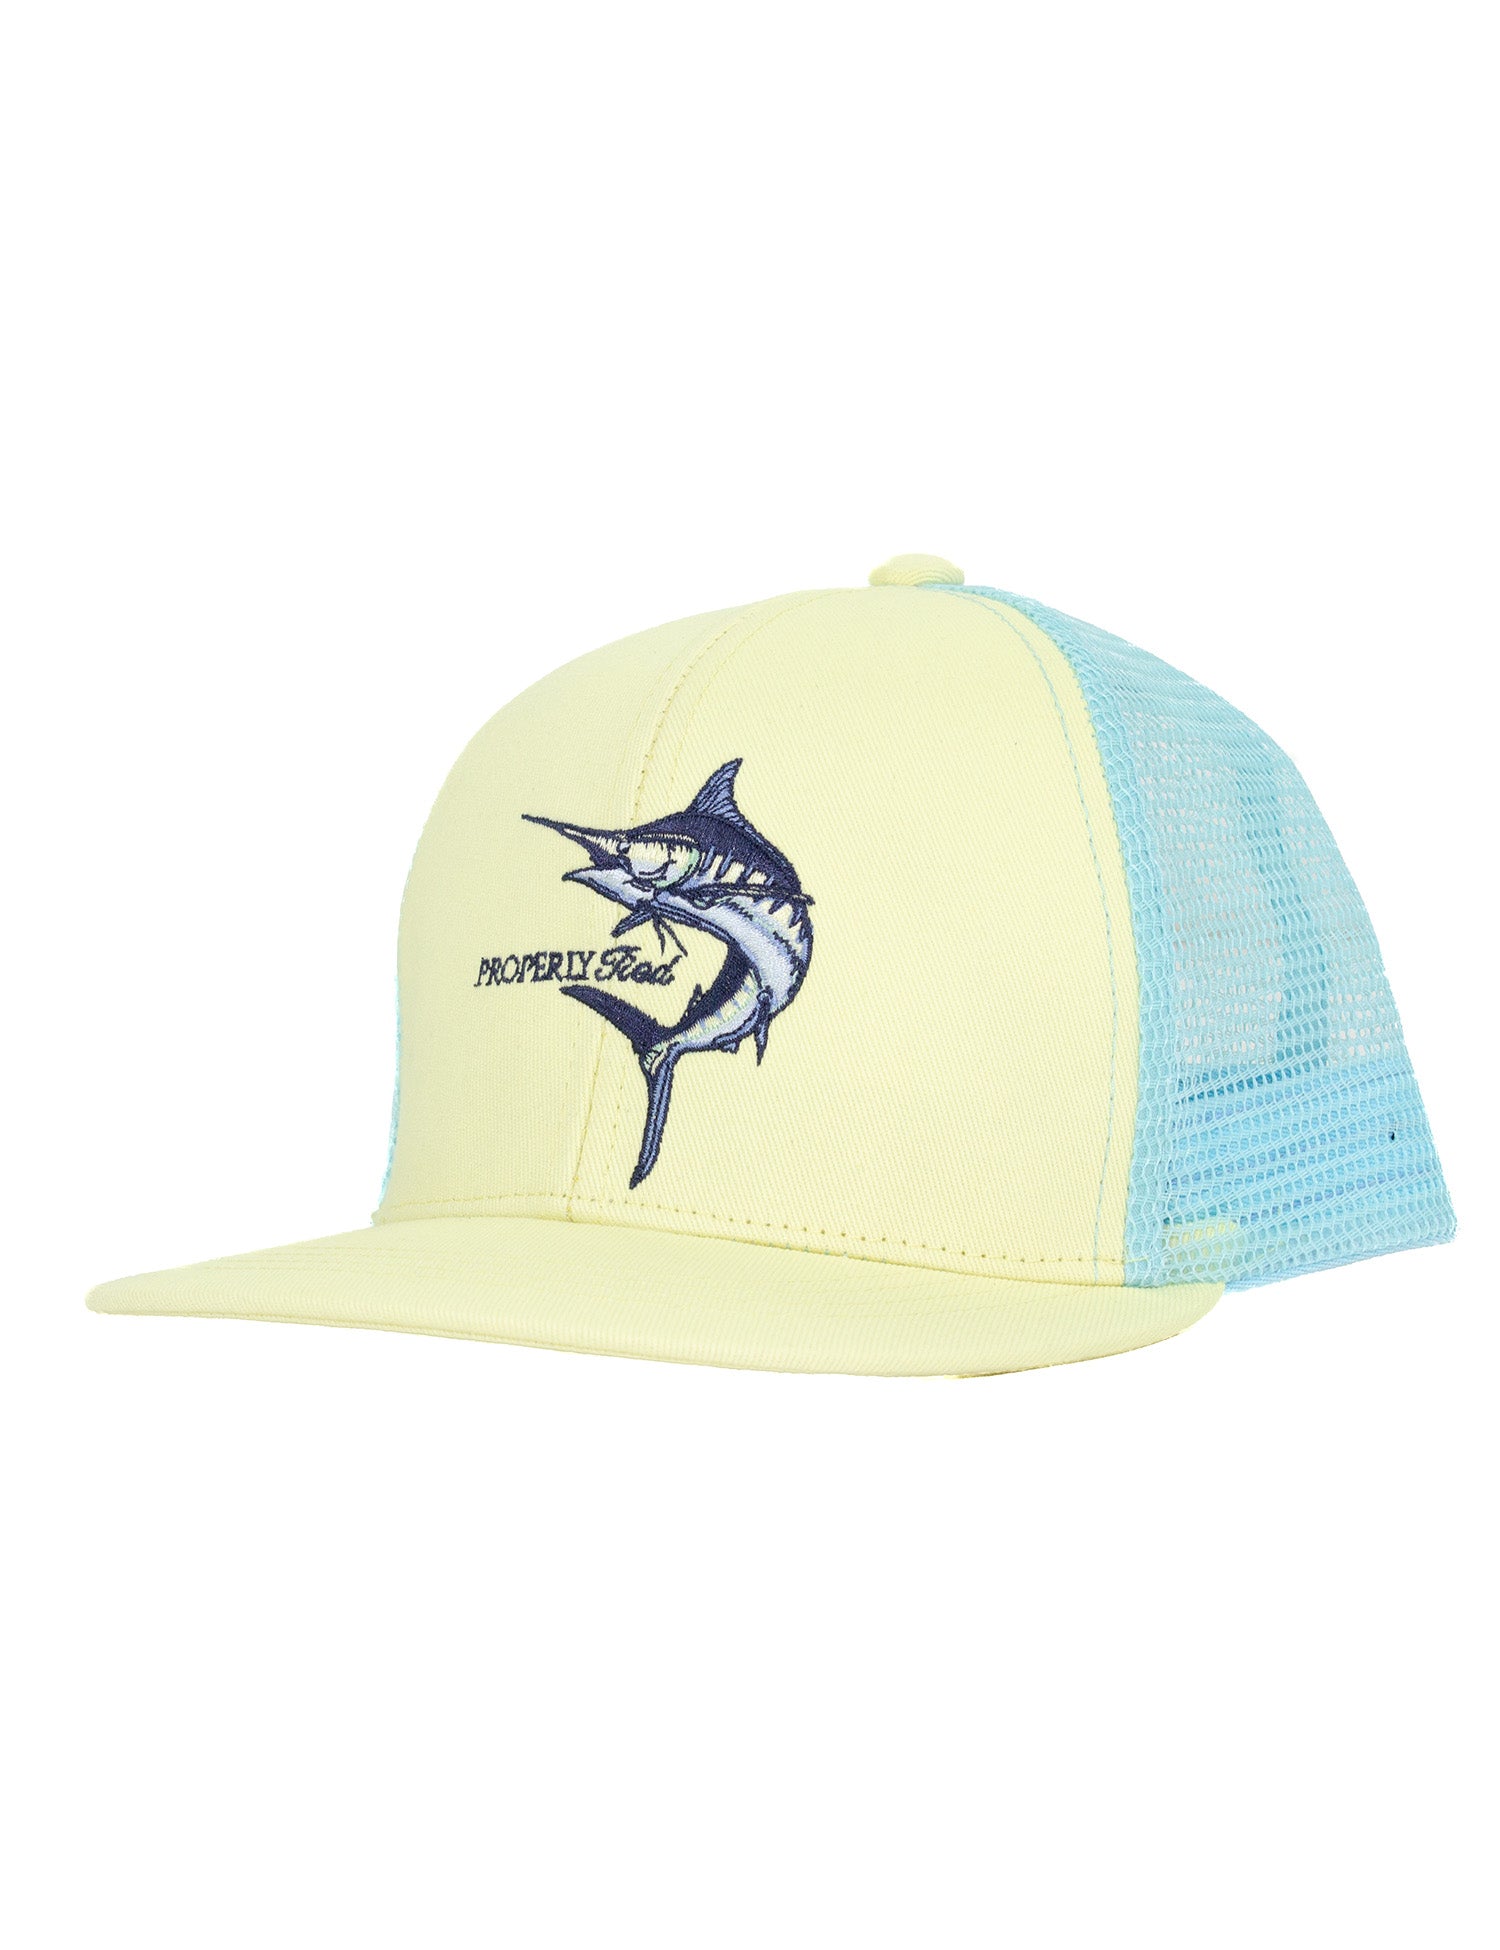 Boys Trucker Hat Blue Marlin